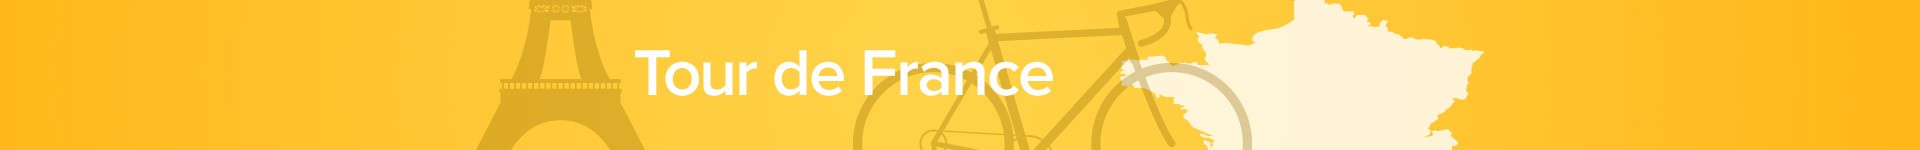 Tour de France: Det handlar inte bara om cykeln!